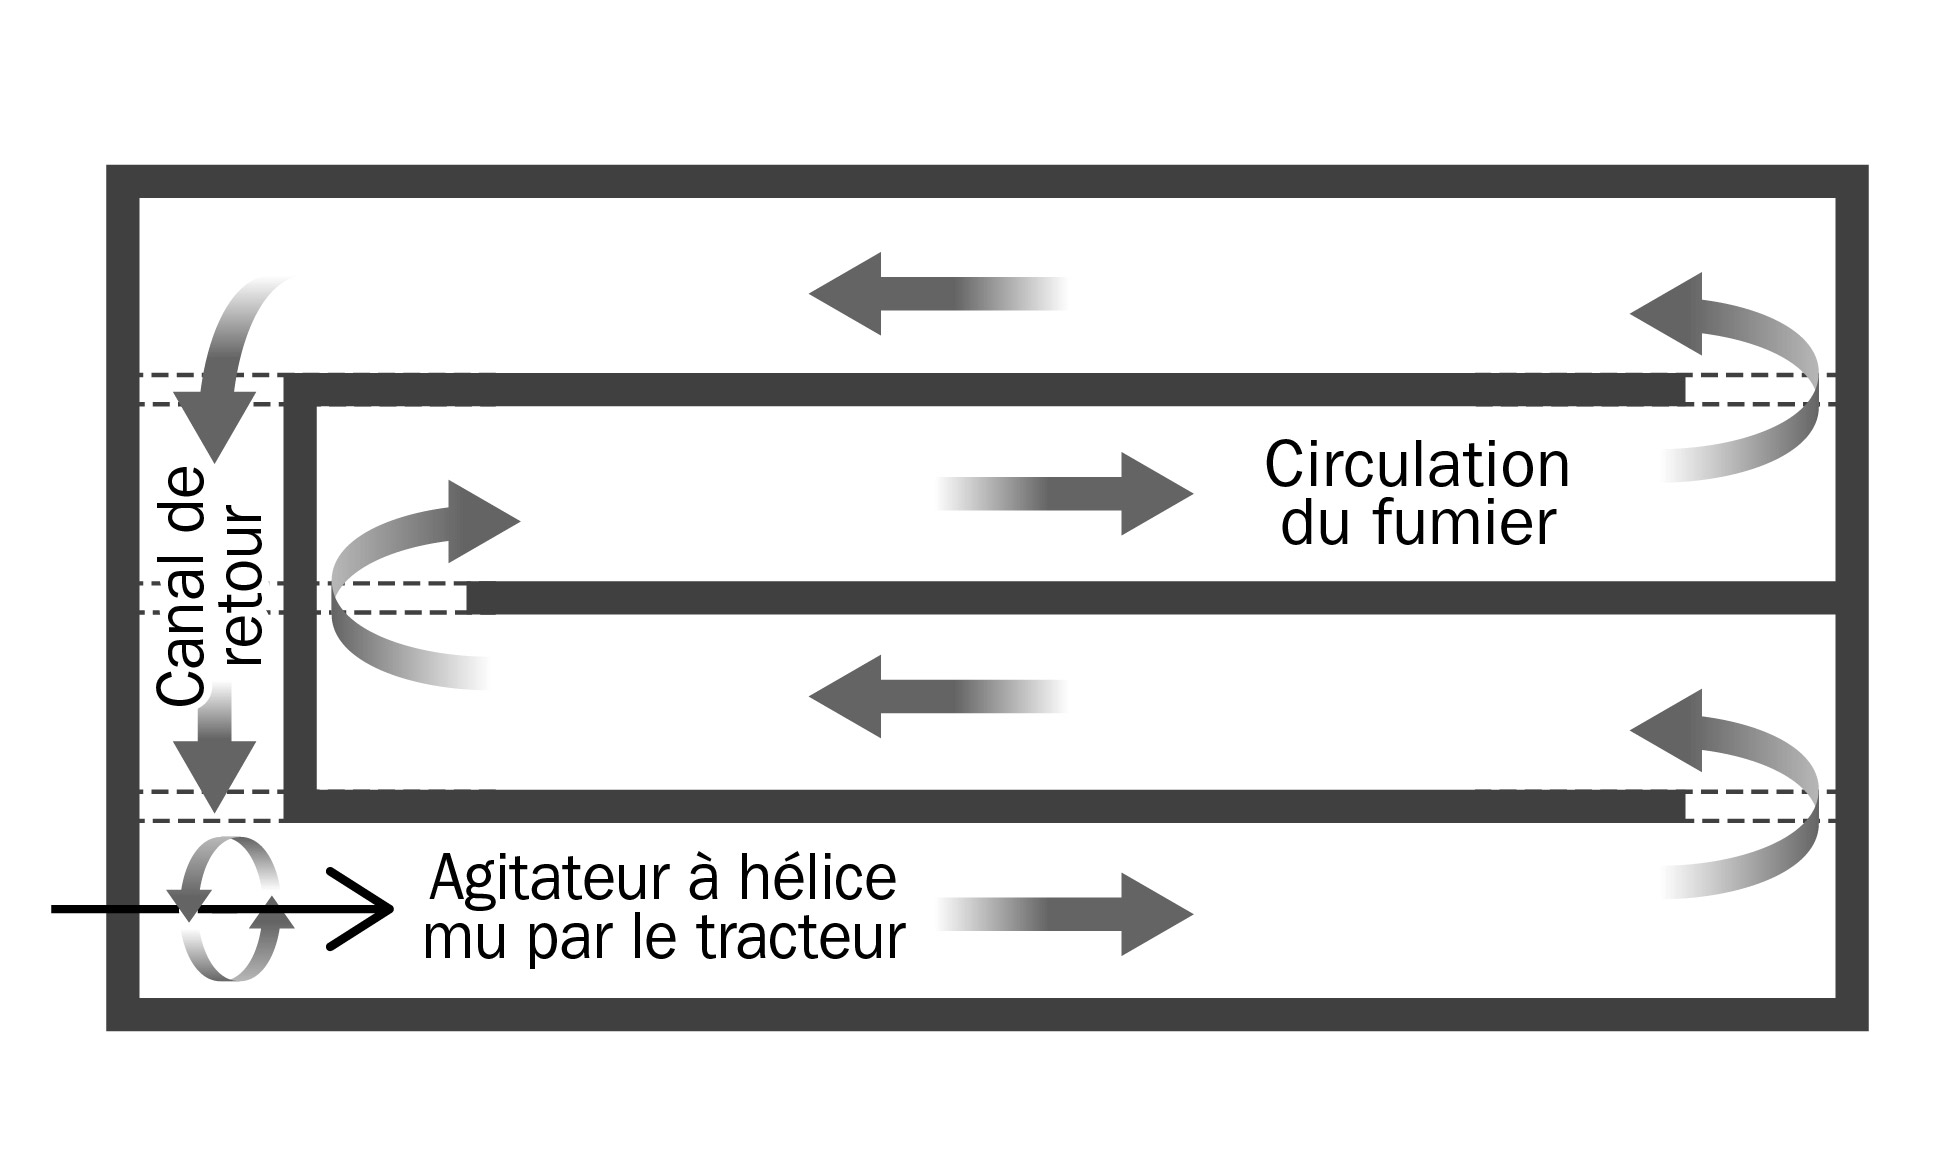 Figure 4.	Vue de dessus du trajet emprunté par le fumier dans un réseau circulatoire couramment utilisé dans les étables sous les planchers lattés. Le schéma montre la trajectoire de l’écoulement du fumier dès que la pompe est en marche.